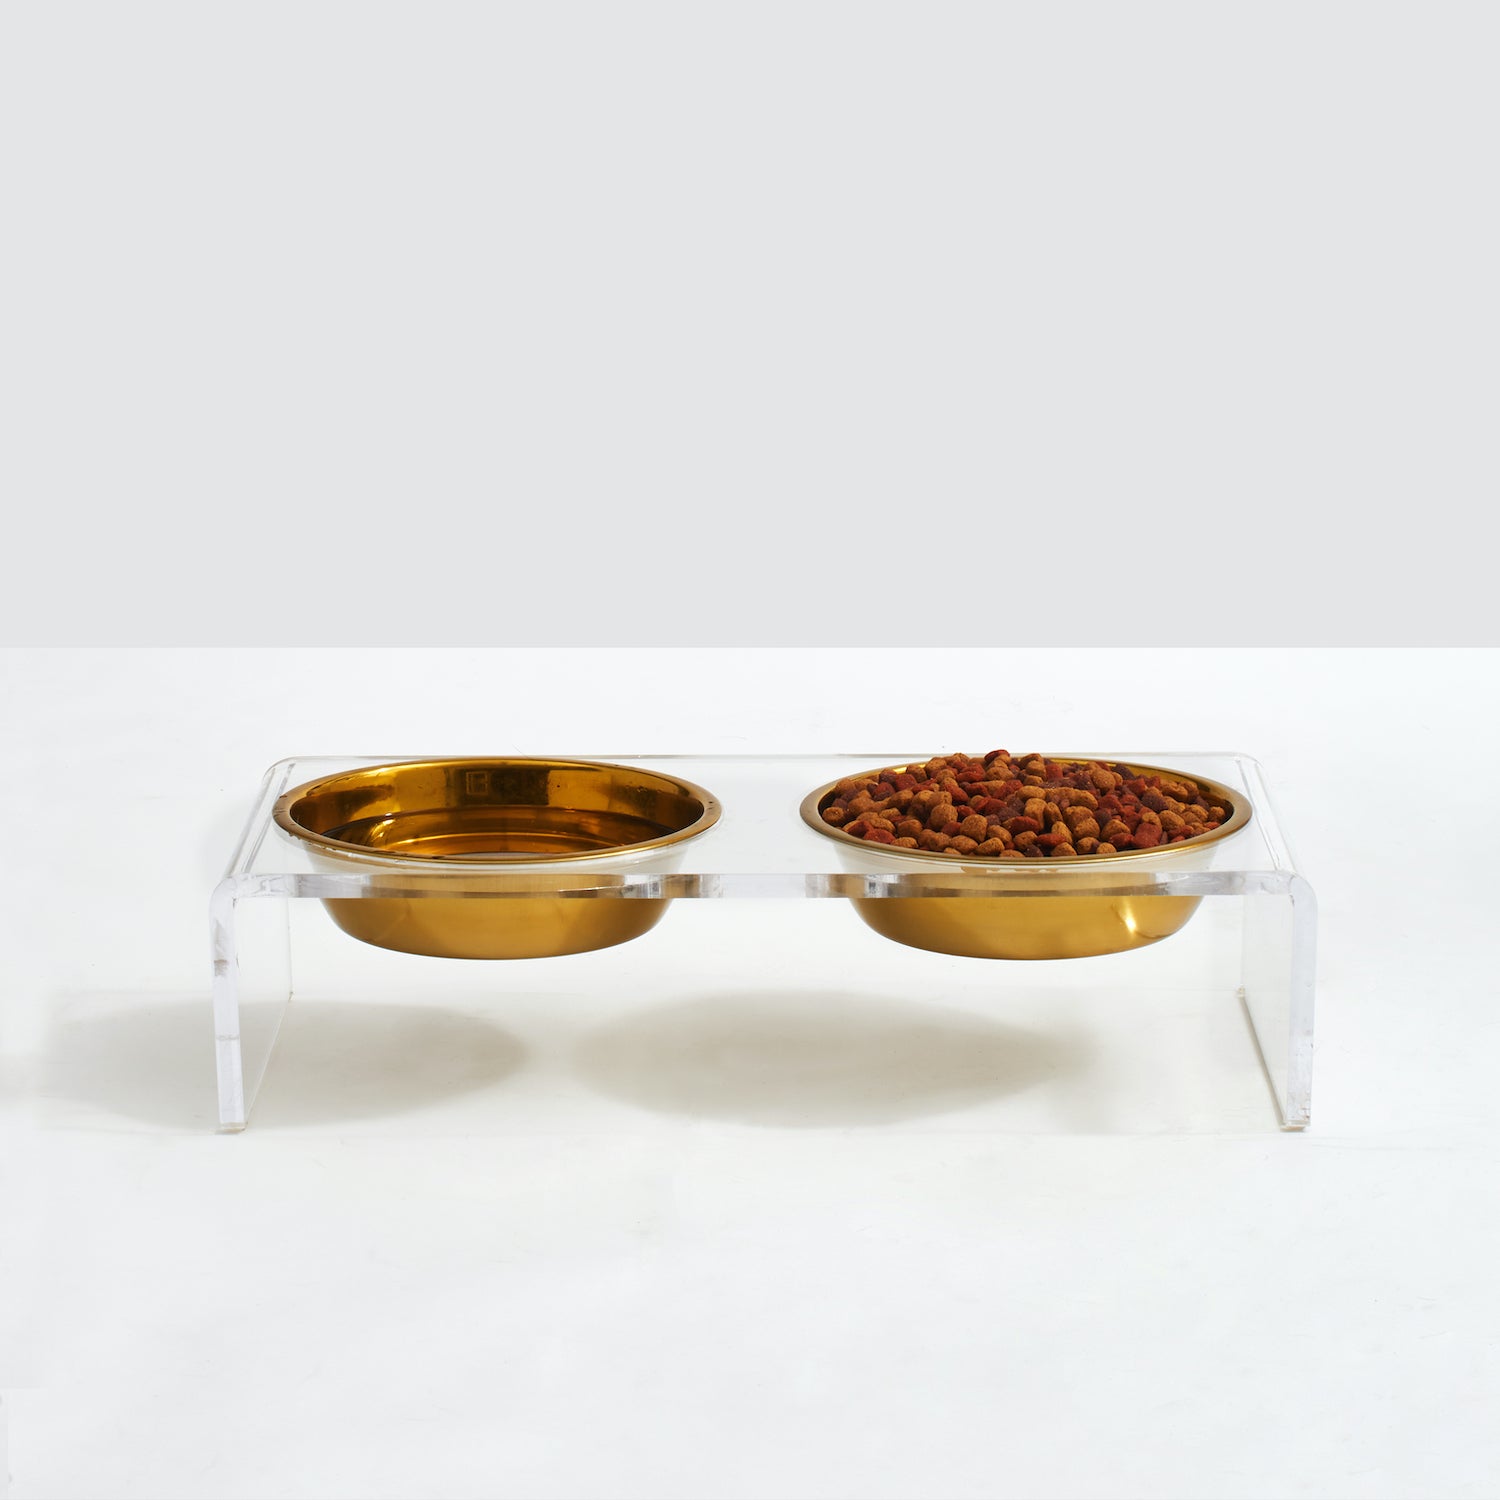 Small Gold Serving Bowls, Gold Dog food bowls